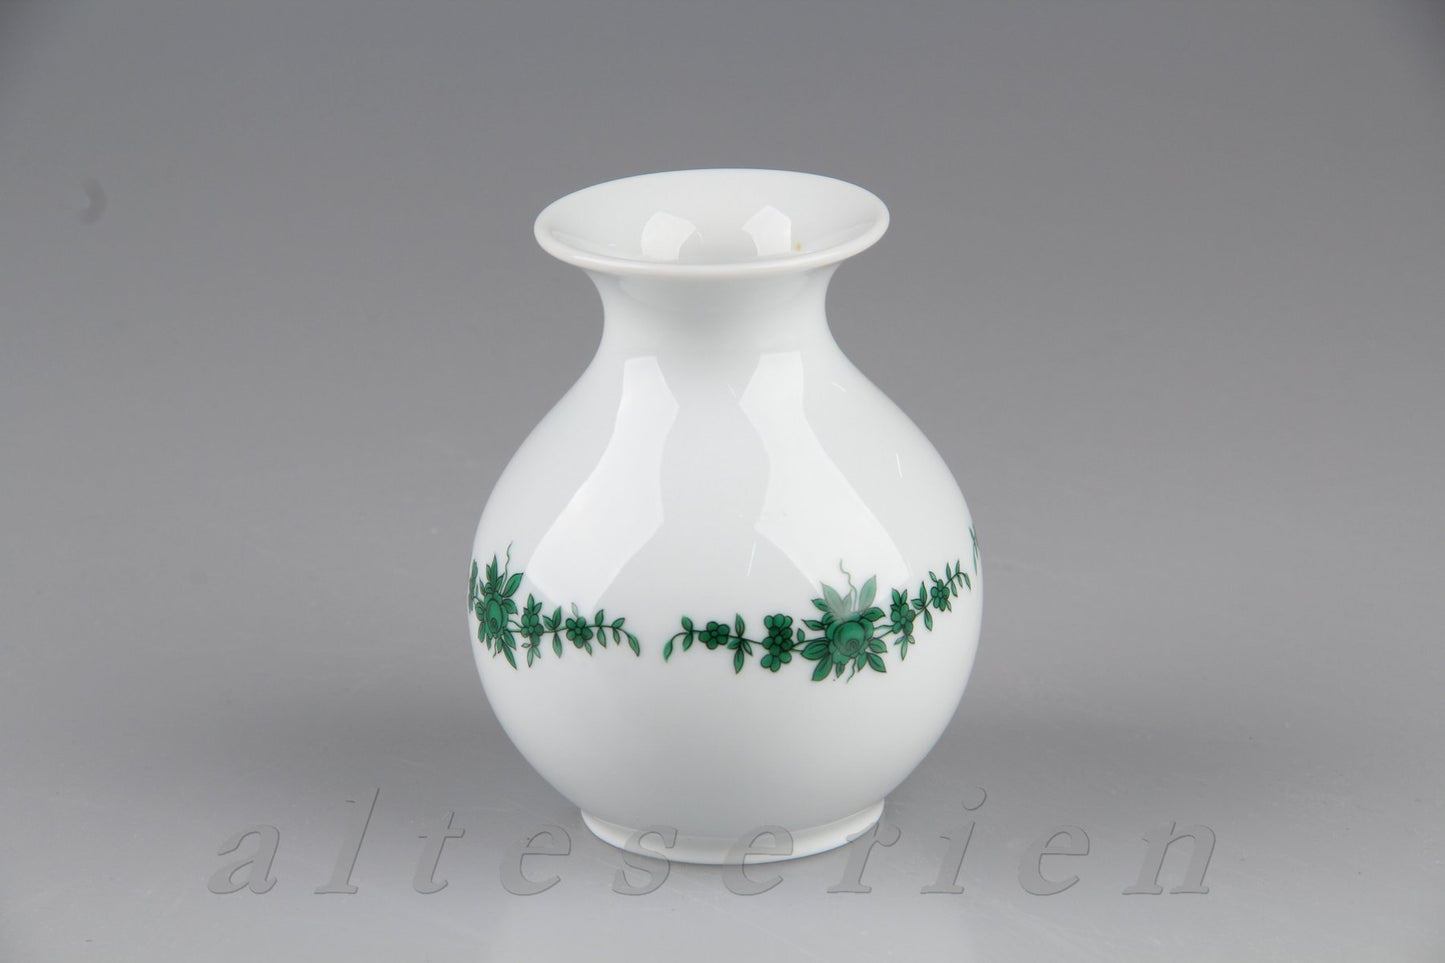 Vase Tischvase klein bauchige Form